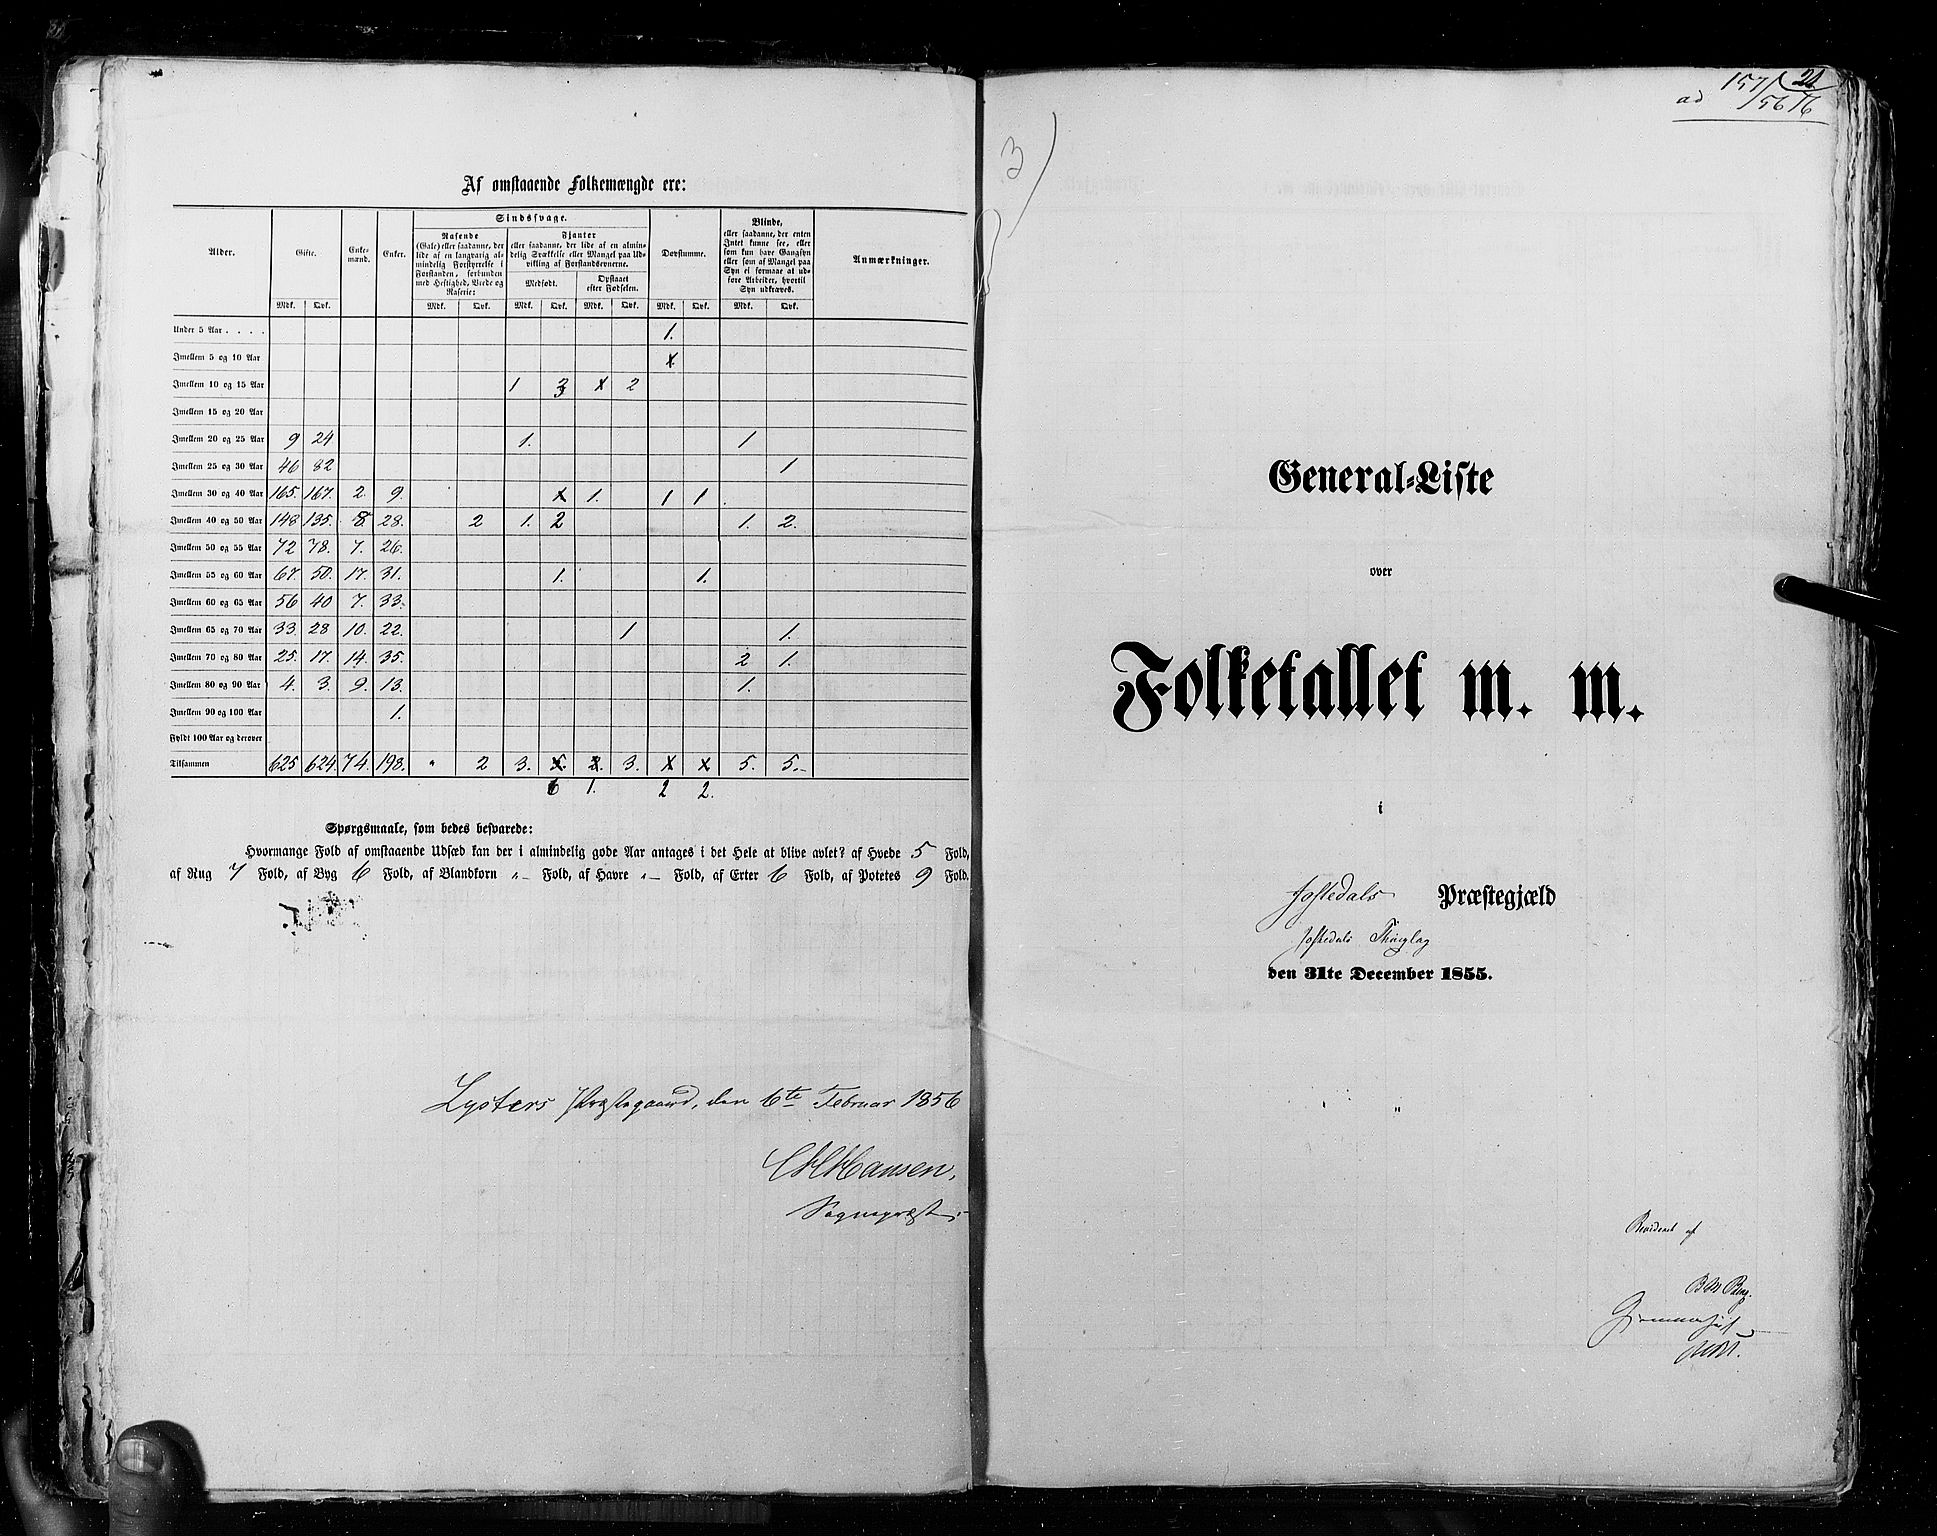 RA, Census 1855, vol. 5: Nordre Bergenhus amt, Romsdal amt og Søndre Trondhjem amt, 1855, p. 21